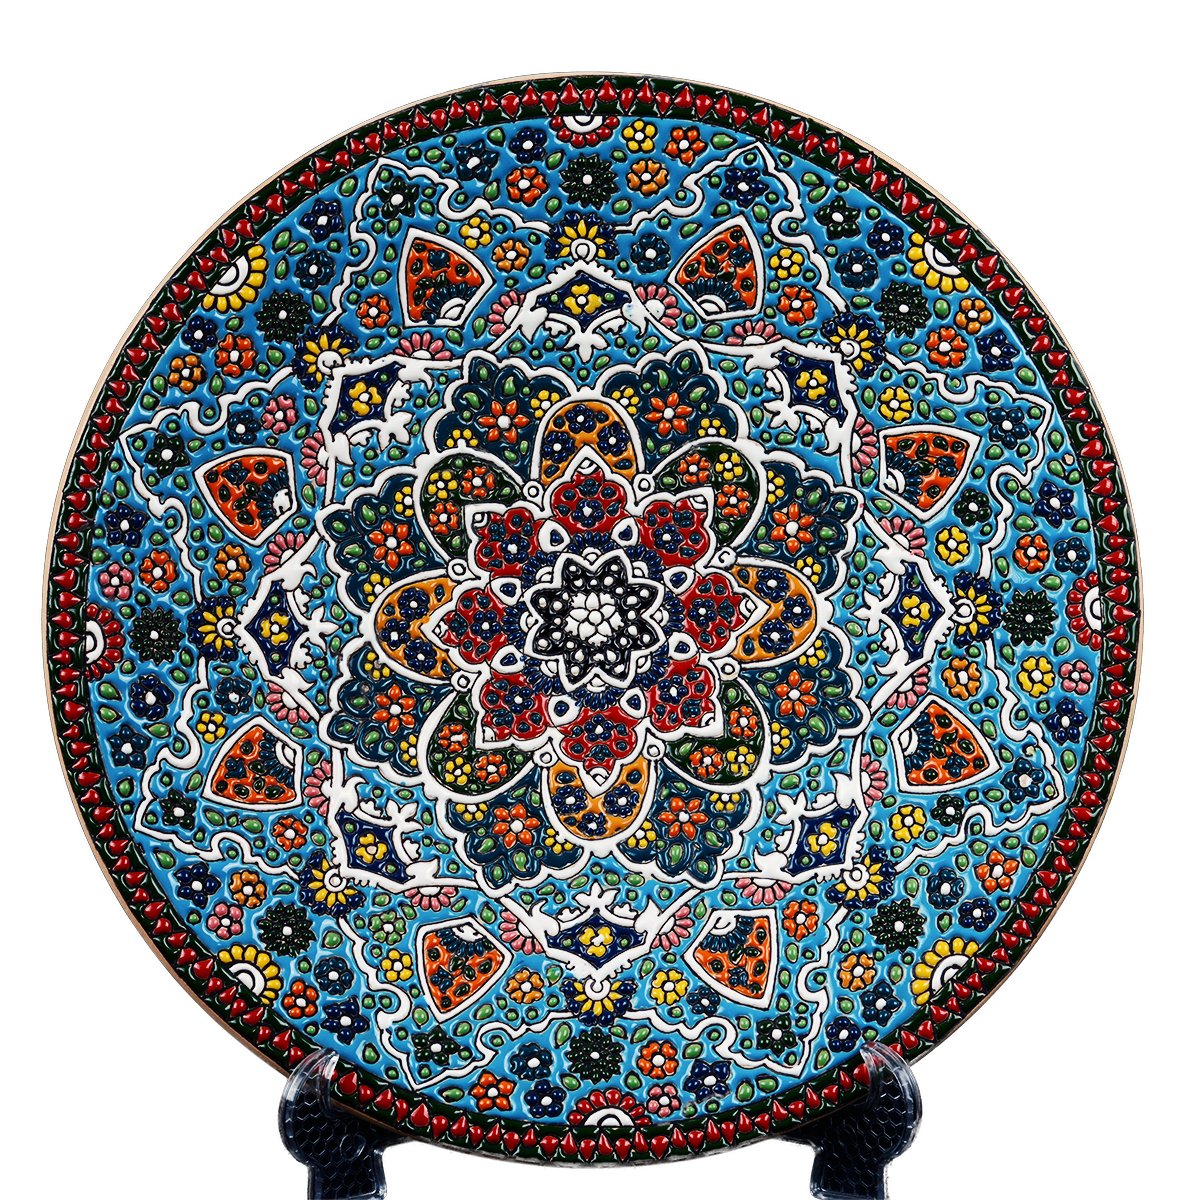 Iranian Enamel Handicraft Dish Model C-102,enamel handicrafts,enamel,buy enamel pots,enamel prices,porcelain enamel,porcelain enamel price